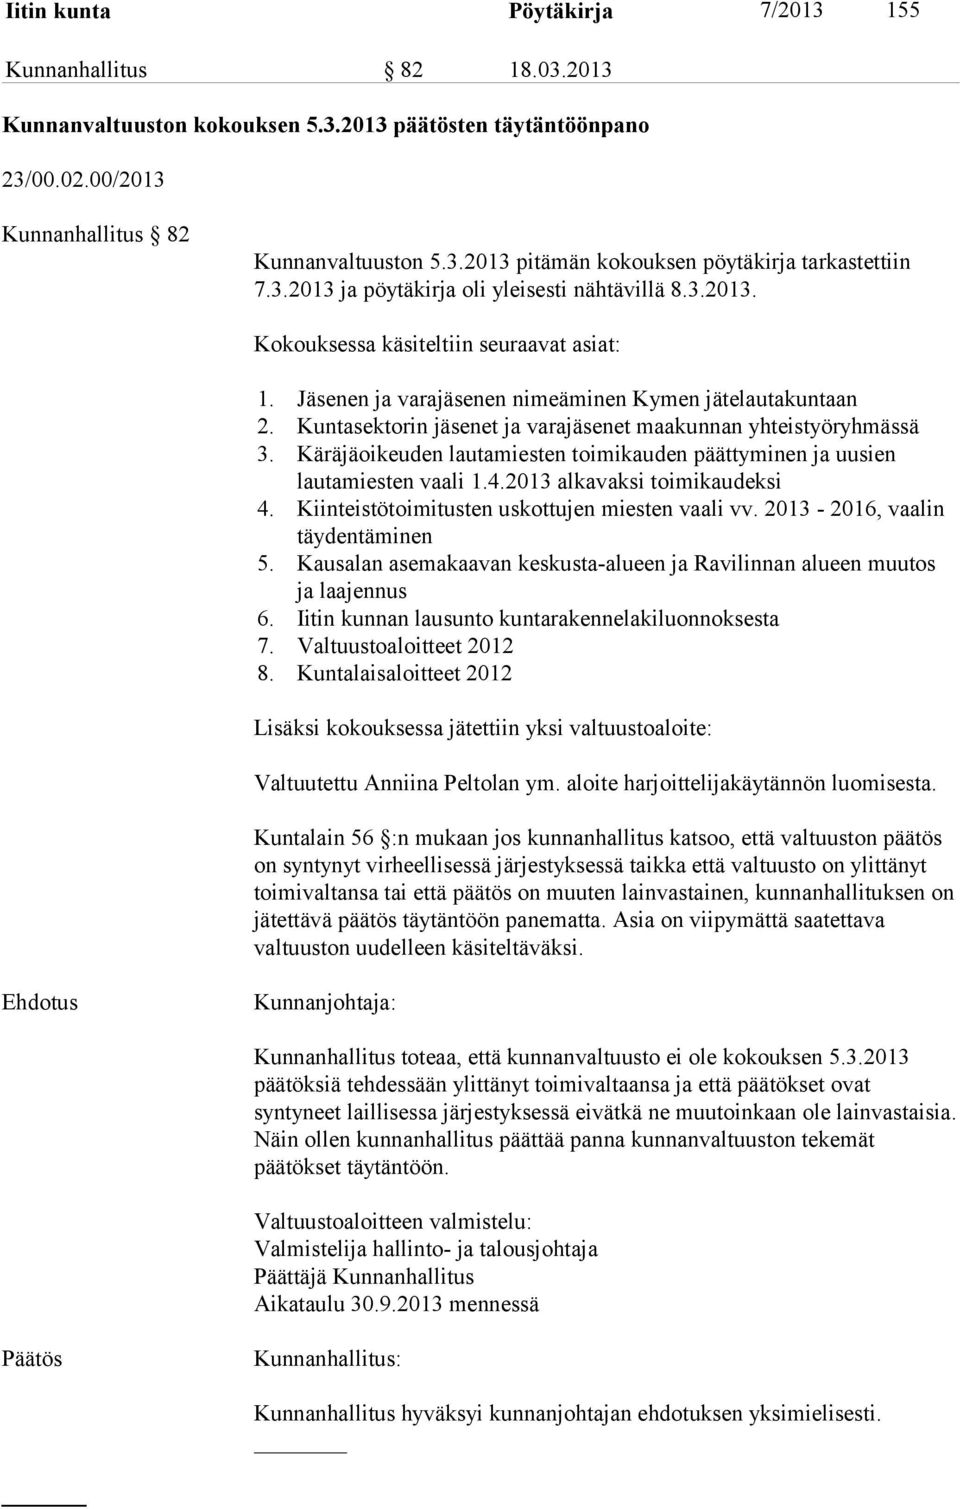 Kuntasektorin jäsenet ja varajäsenet maakunnan yhteistyöryhmässä 3. Käräjäoikeuden lautamiesten toimikauden päättyminen ja uusien lautamiesten vaali 1.4.2013 alkavaksi toimikaudeksi 4.